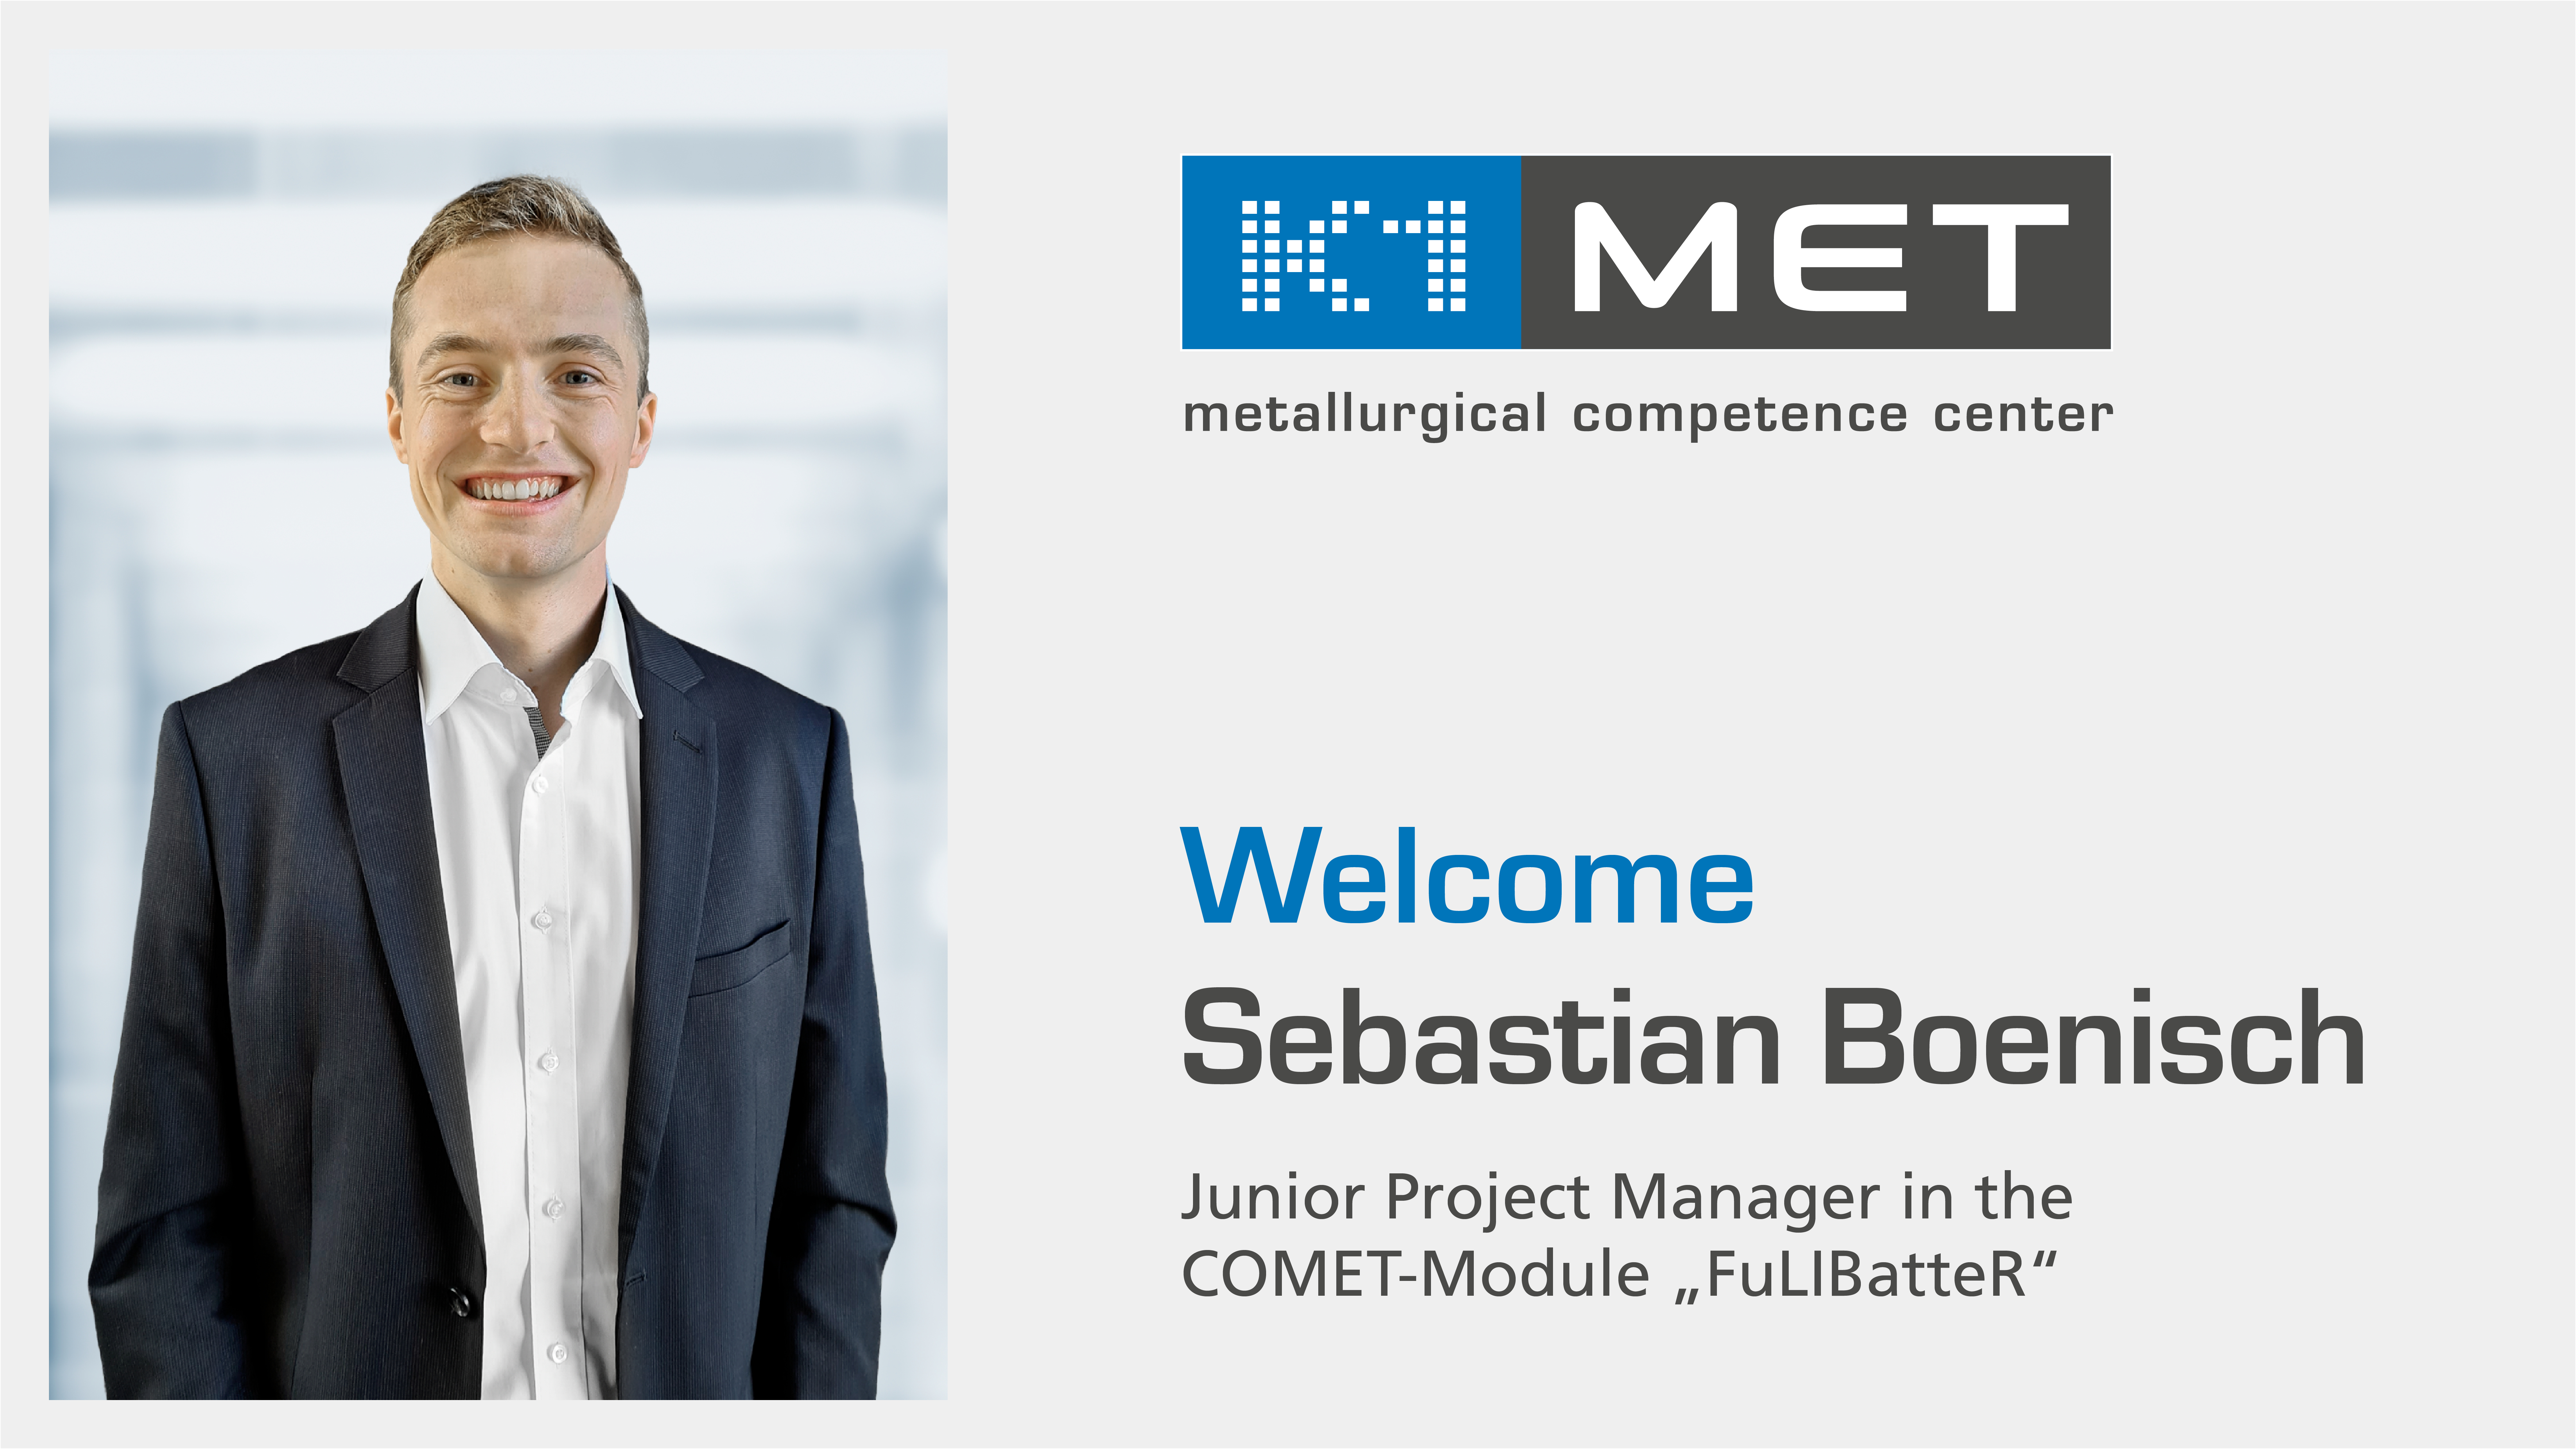 Welcome Sebastian Boenisch, Junior Project Manager in the COMET-Module “FuLIBatteR”